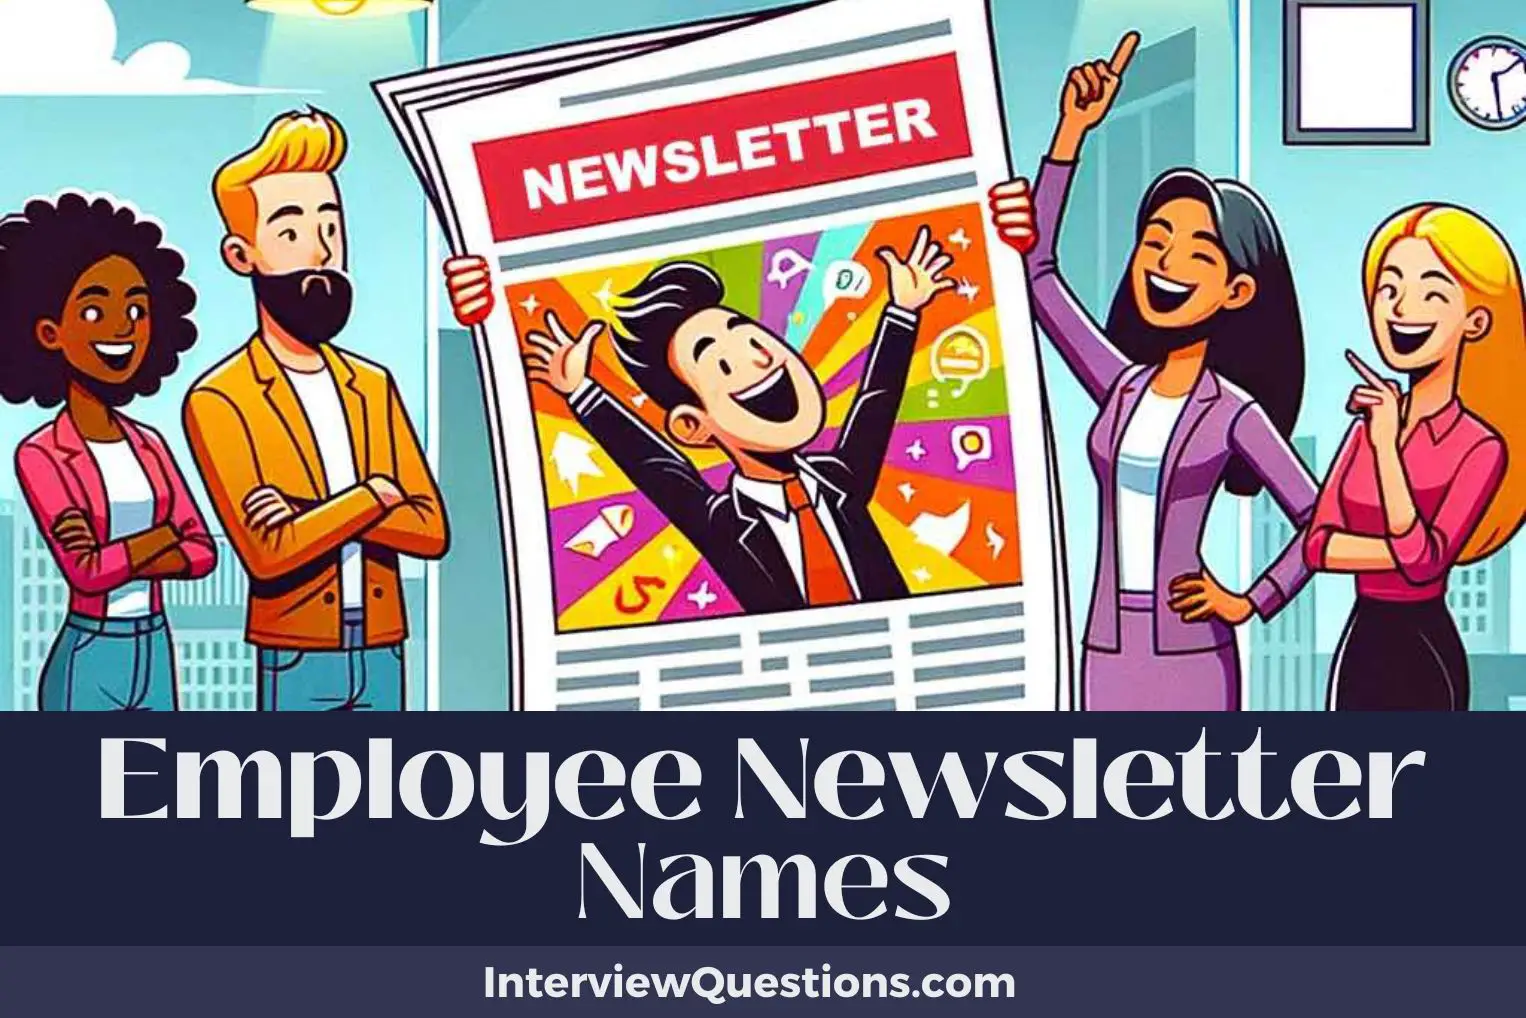 Employee Newsletter Names